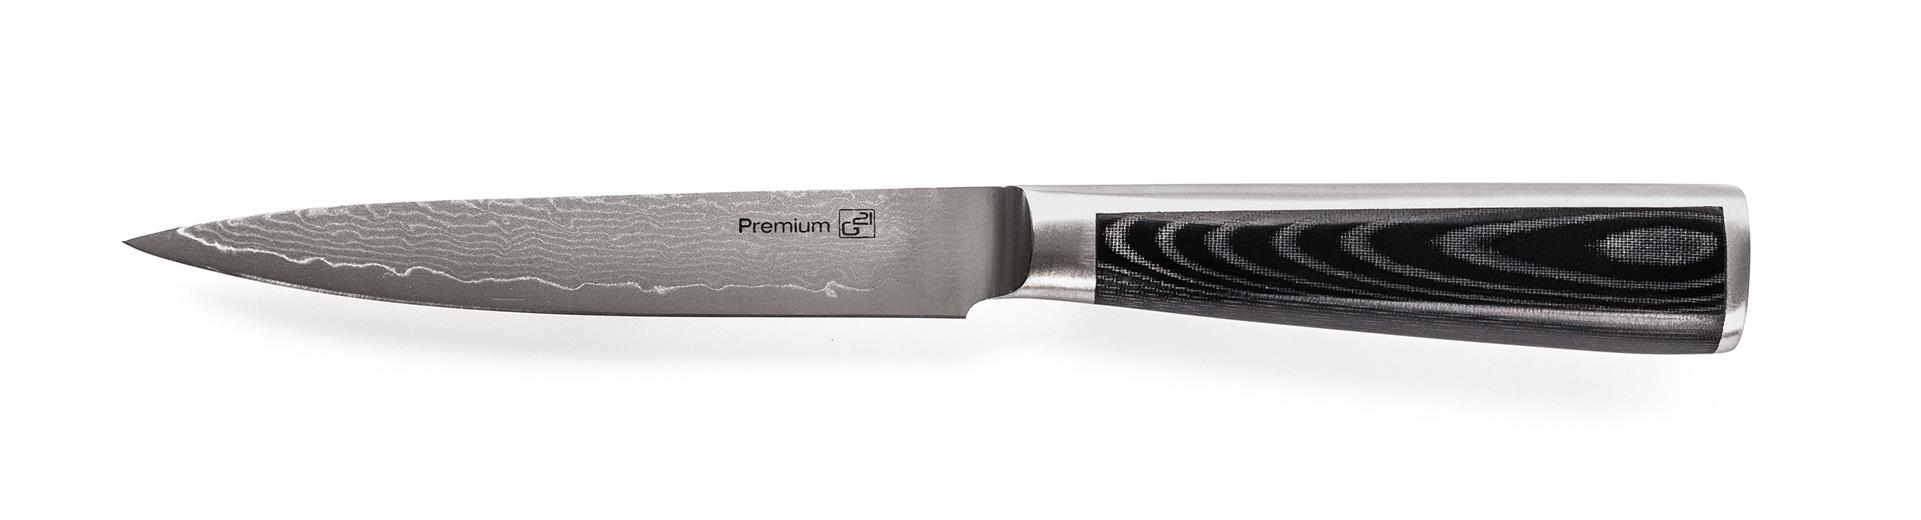 G21 Nůž Damascus Premium 13 cm G21-DMSP-13KL